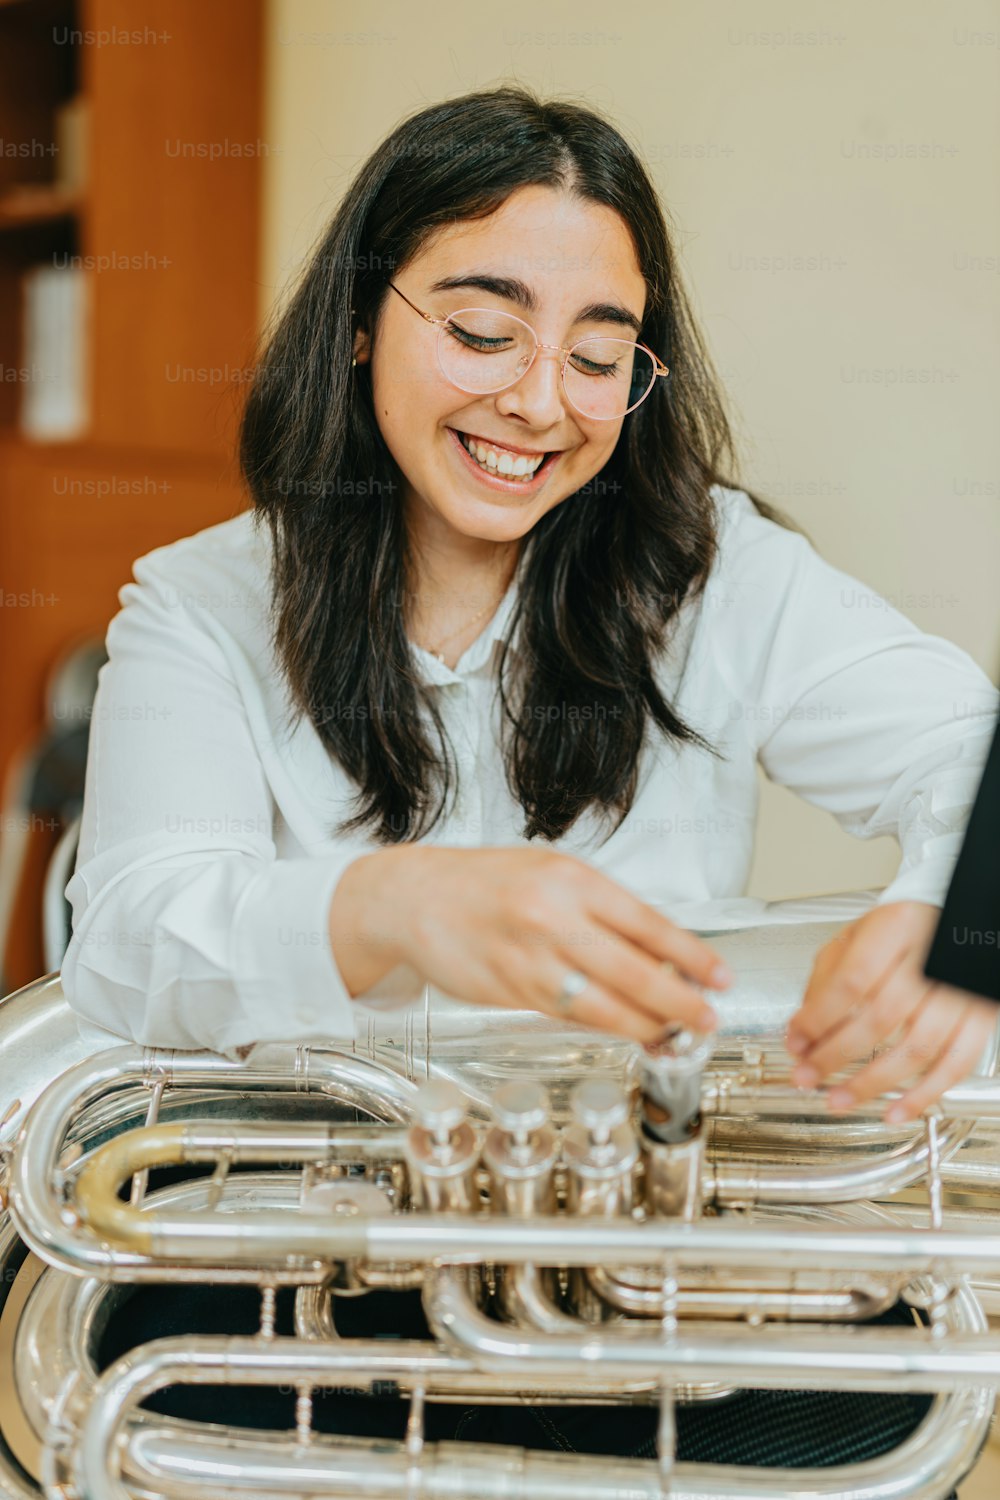 Una mujer sonríe mientras toca un instrumento musical